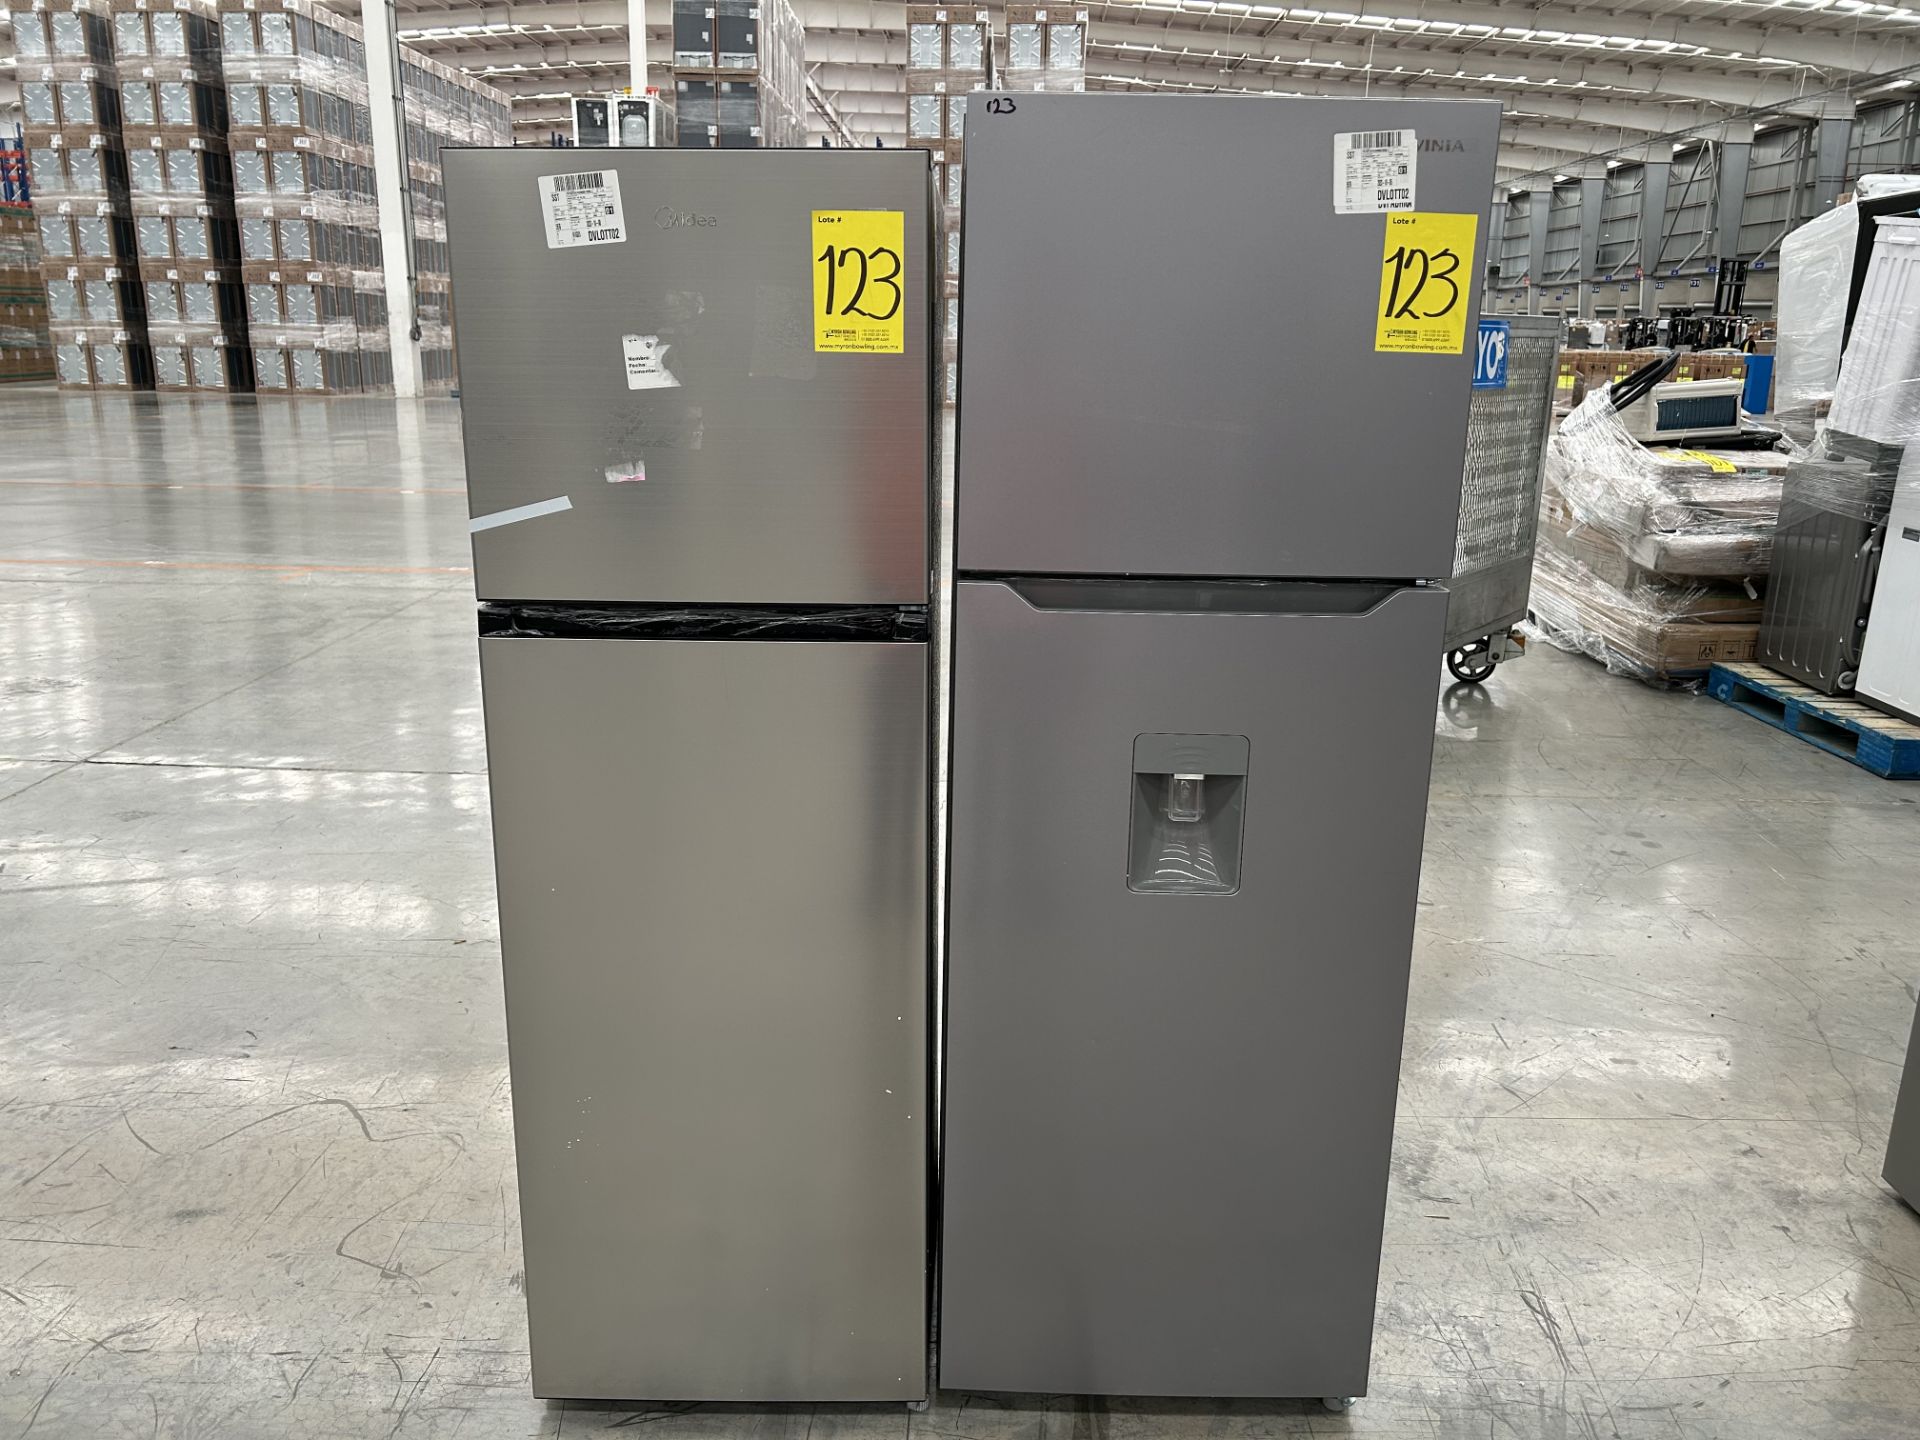 Lote de 2 Refrigeradores contiene: 1 Refrigerador con dispensador de agua Marca MIDEA, Modelo WRT12